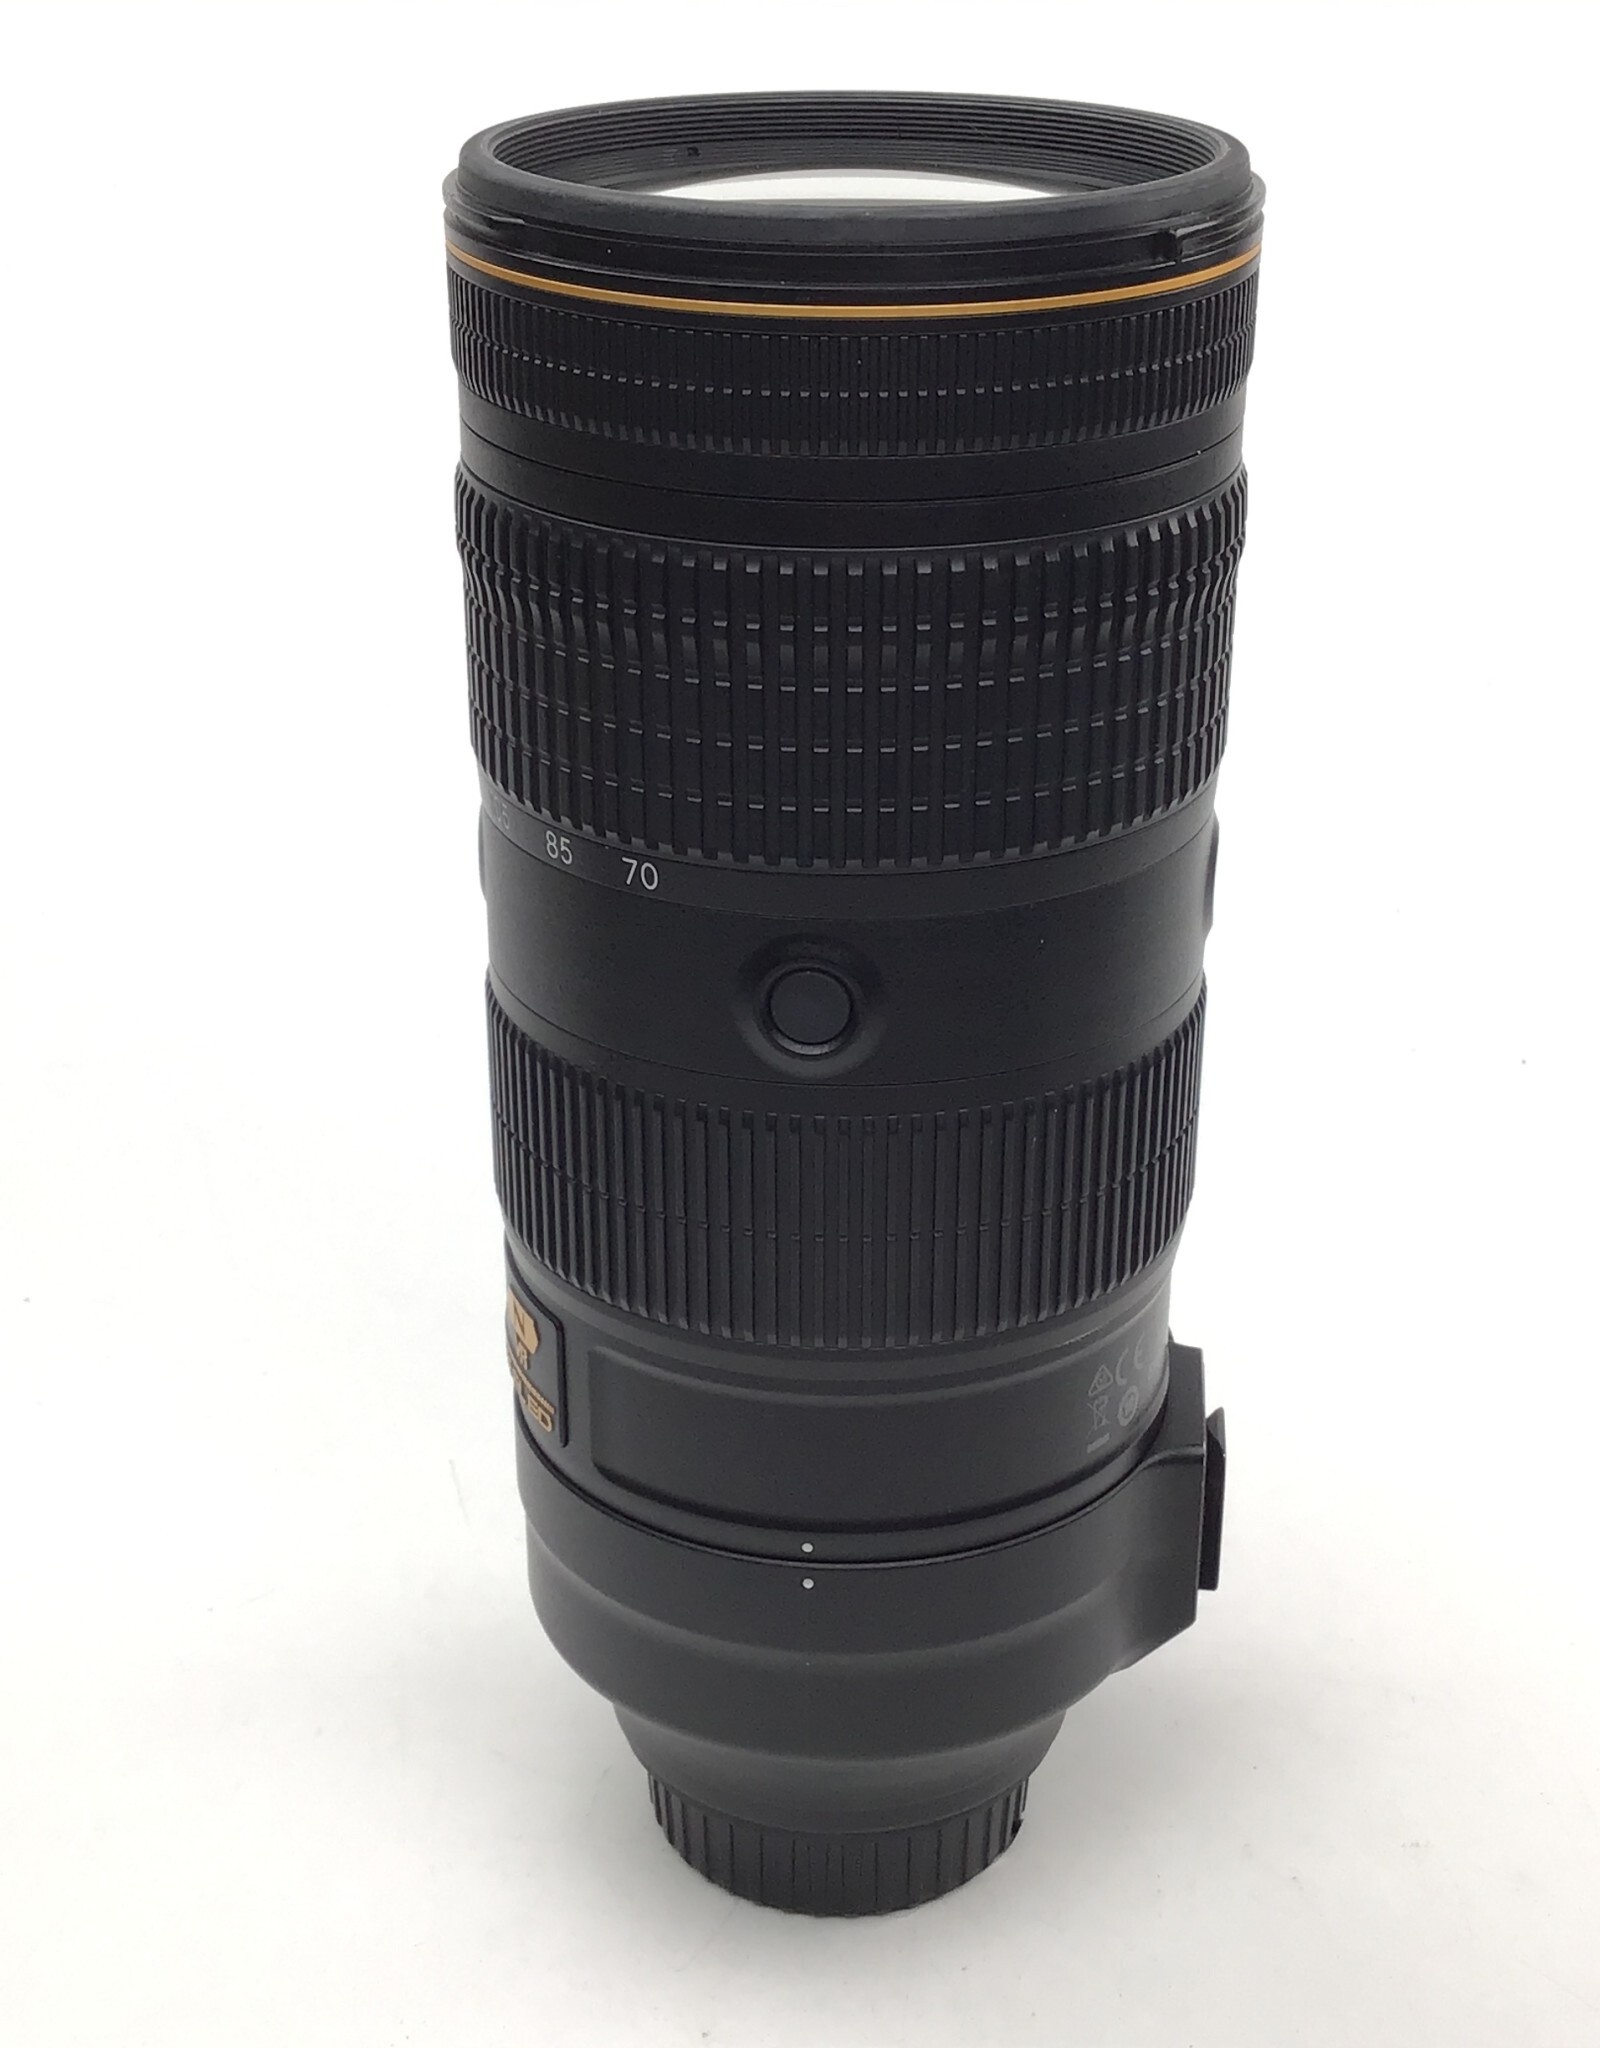 NIKON Nikon AF-S Nikkor 70-200mm f2.8E FL VR Lens No Tripod Foot Used Good